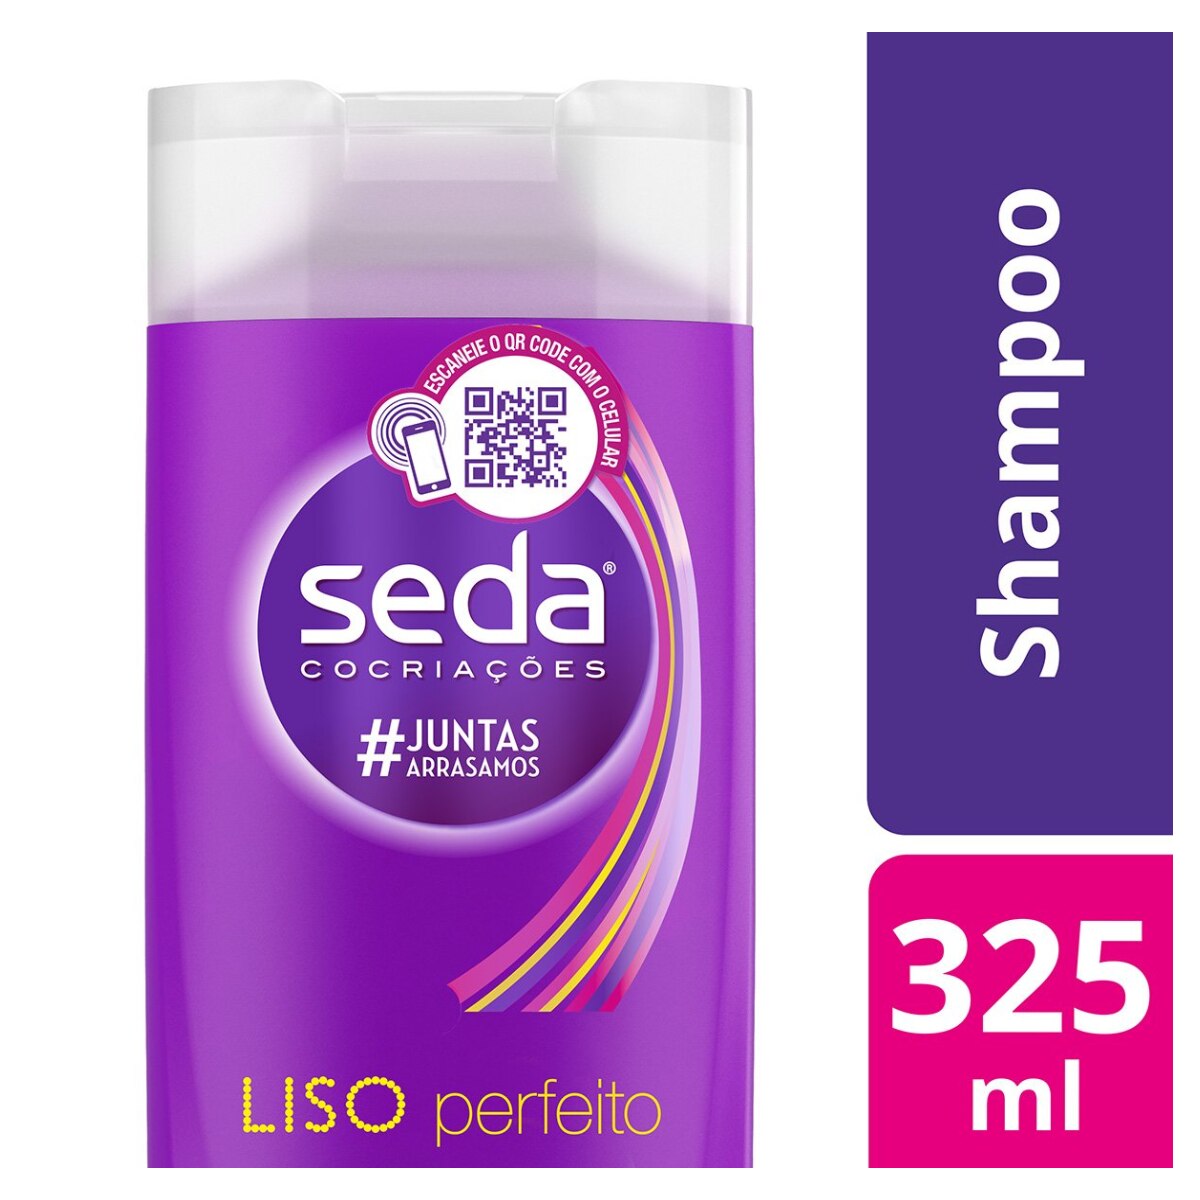 Shampoo Seda Cocriacoes Liso Perfeito 325ml